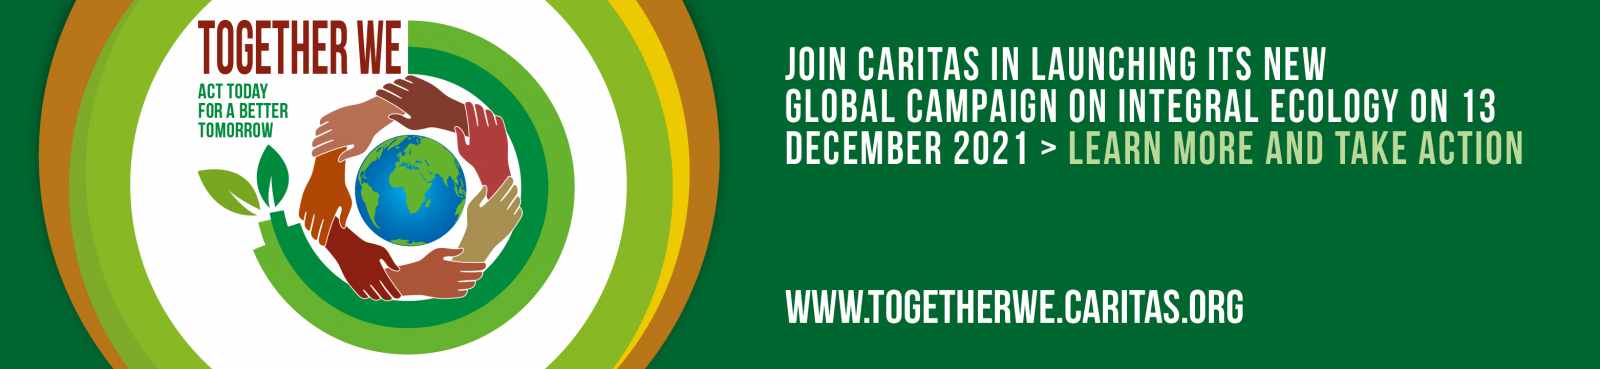 Caritas Việt Nam khởi động chiến dịch "Chúng ta cùng nhau"